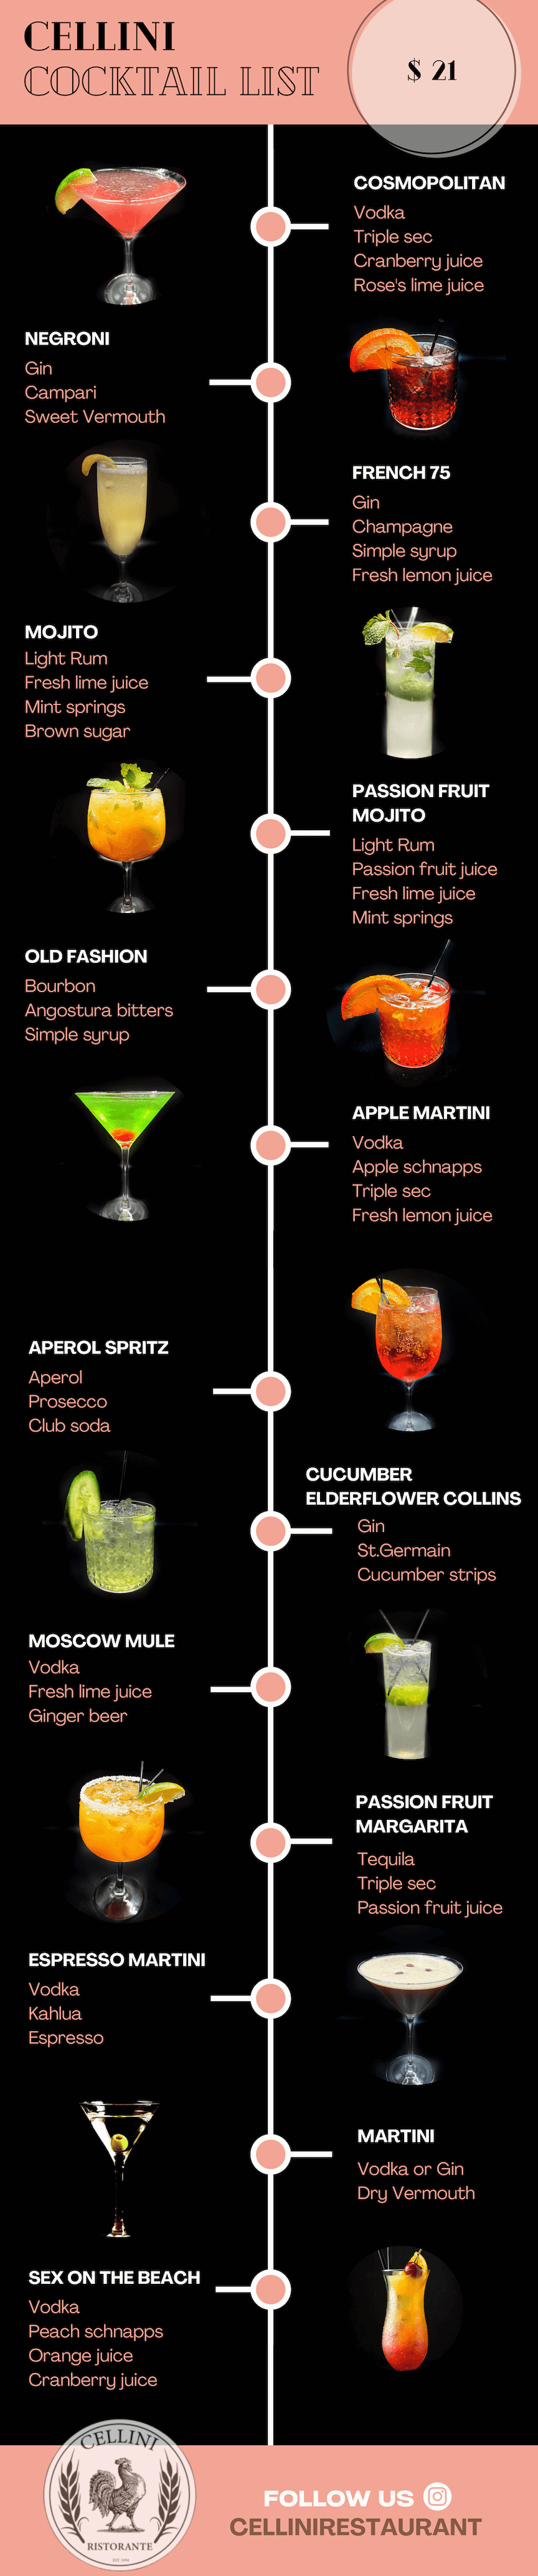 Cellini Cocktail List